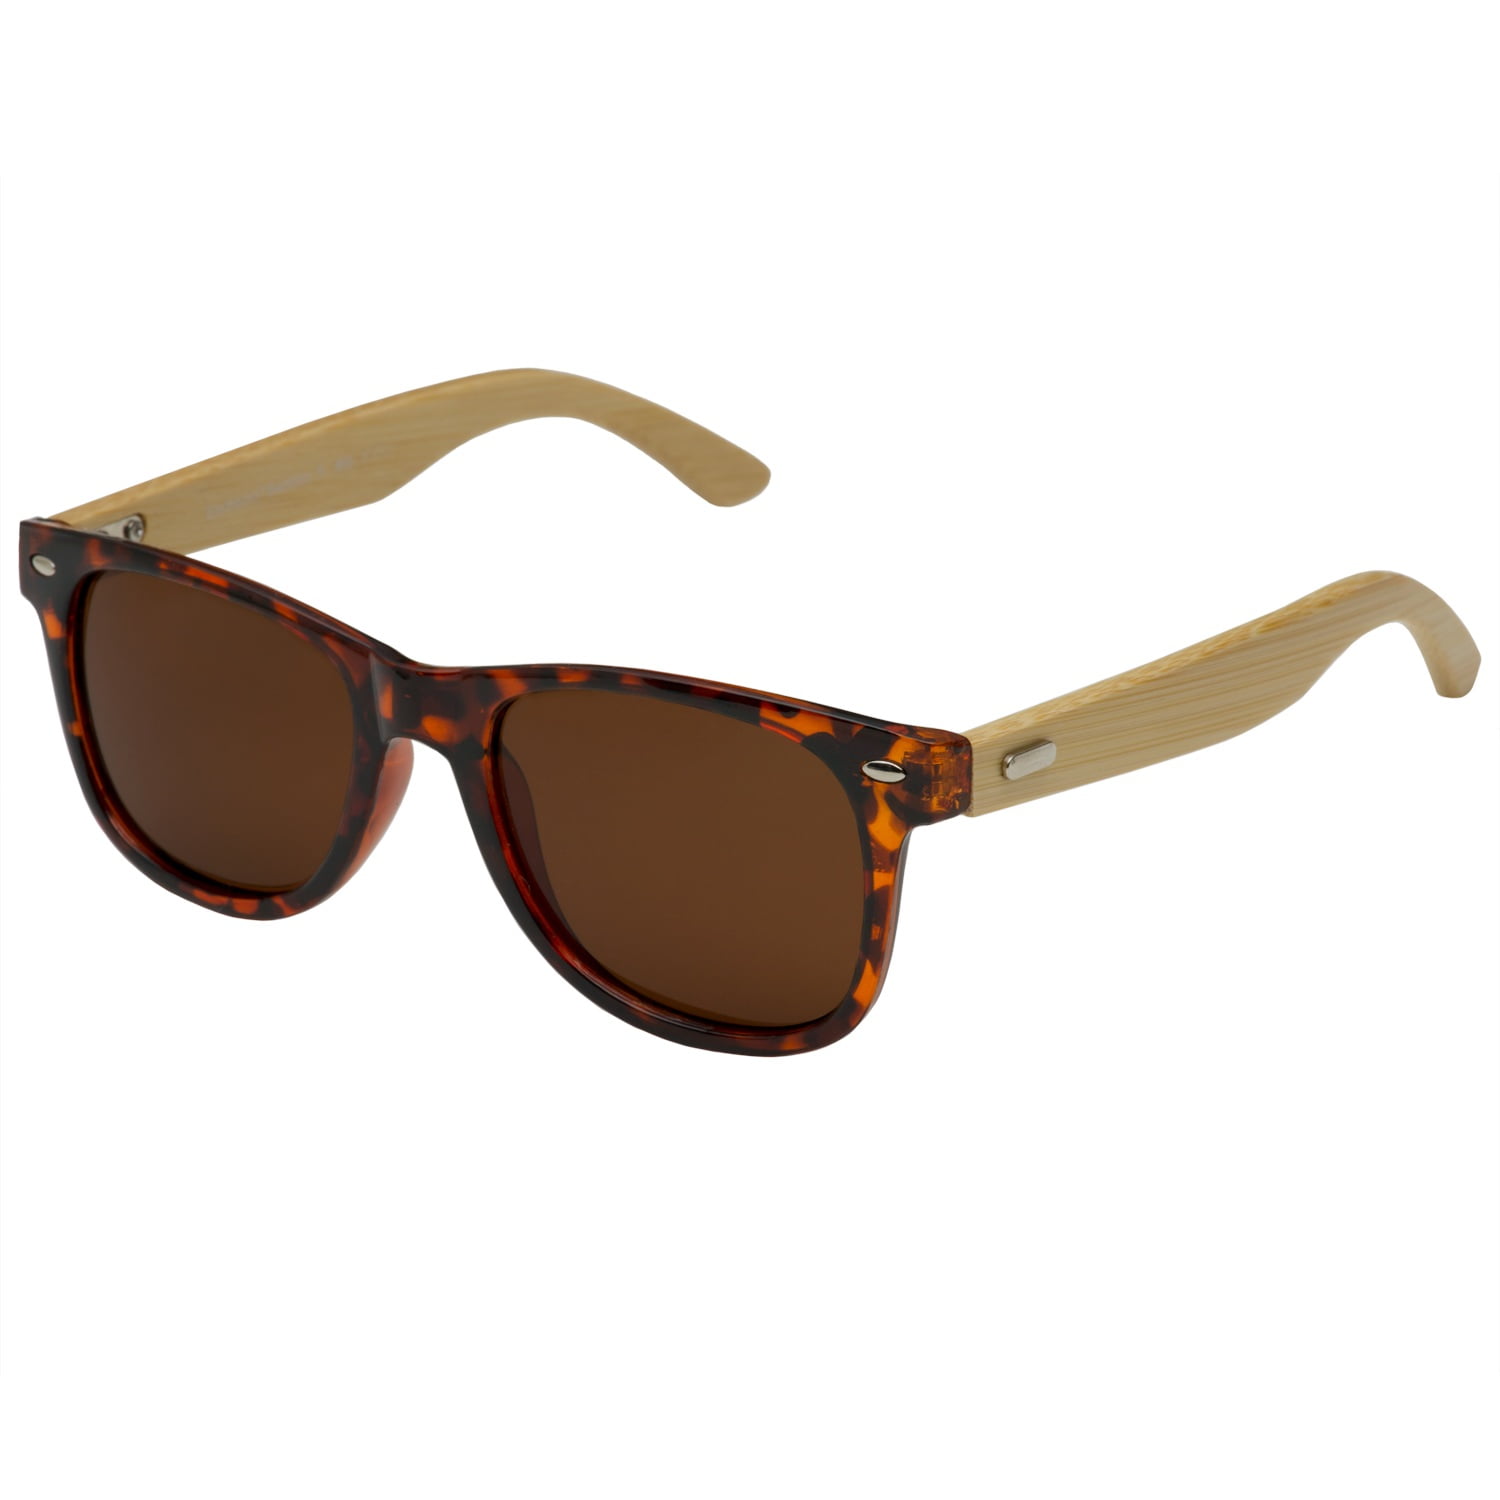 Polarized Bamboo Sunglasses Classic Aviator Gold Men Women Wooden Frame UV 100% 